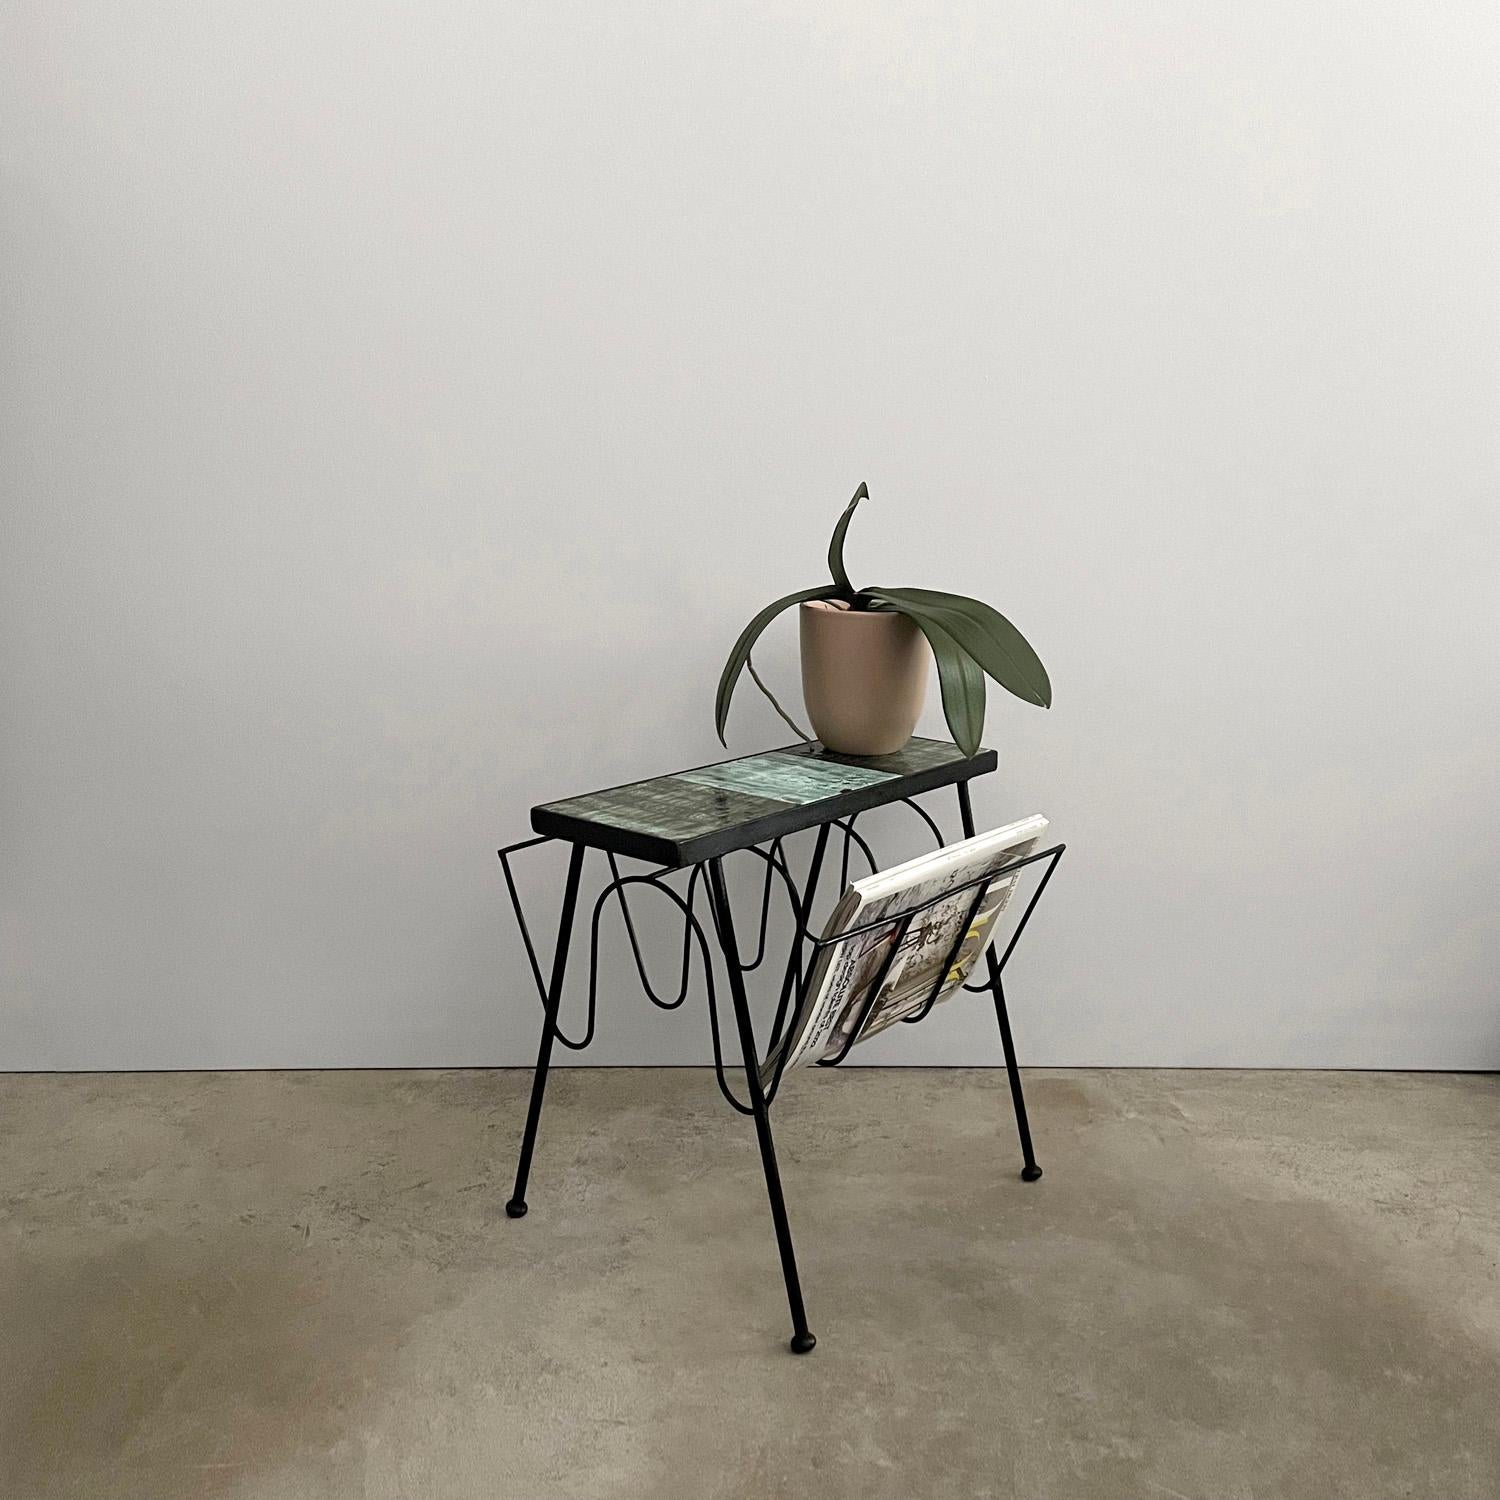 Italienischer Magazintisch aus Keramik und Eisen
Italien, ca. 1950er Jahre
Schlank, schlank und multifunktional 
Dieser kleine Tisch hat es in sich 
Der obere Teil ist mit organischen Keramikfliesen versehen, die die perfekte Oberfläche für einen